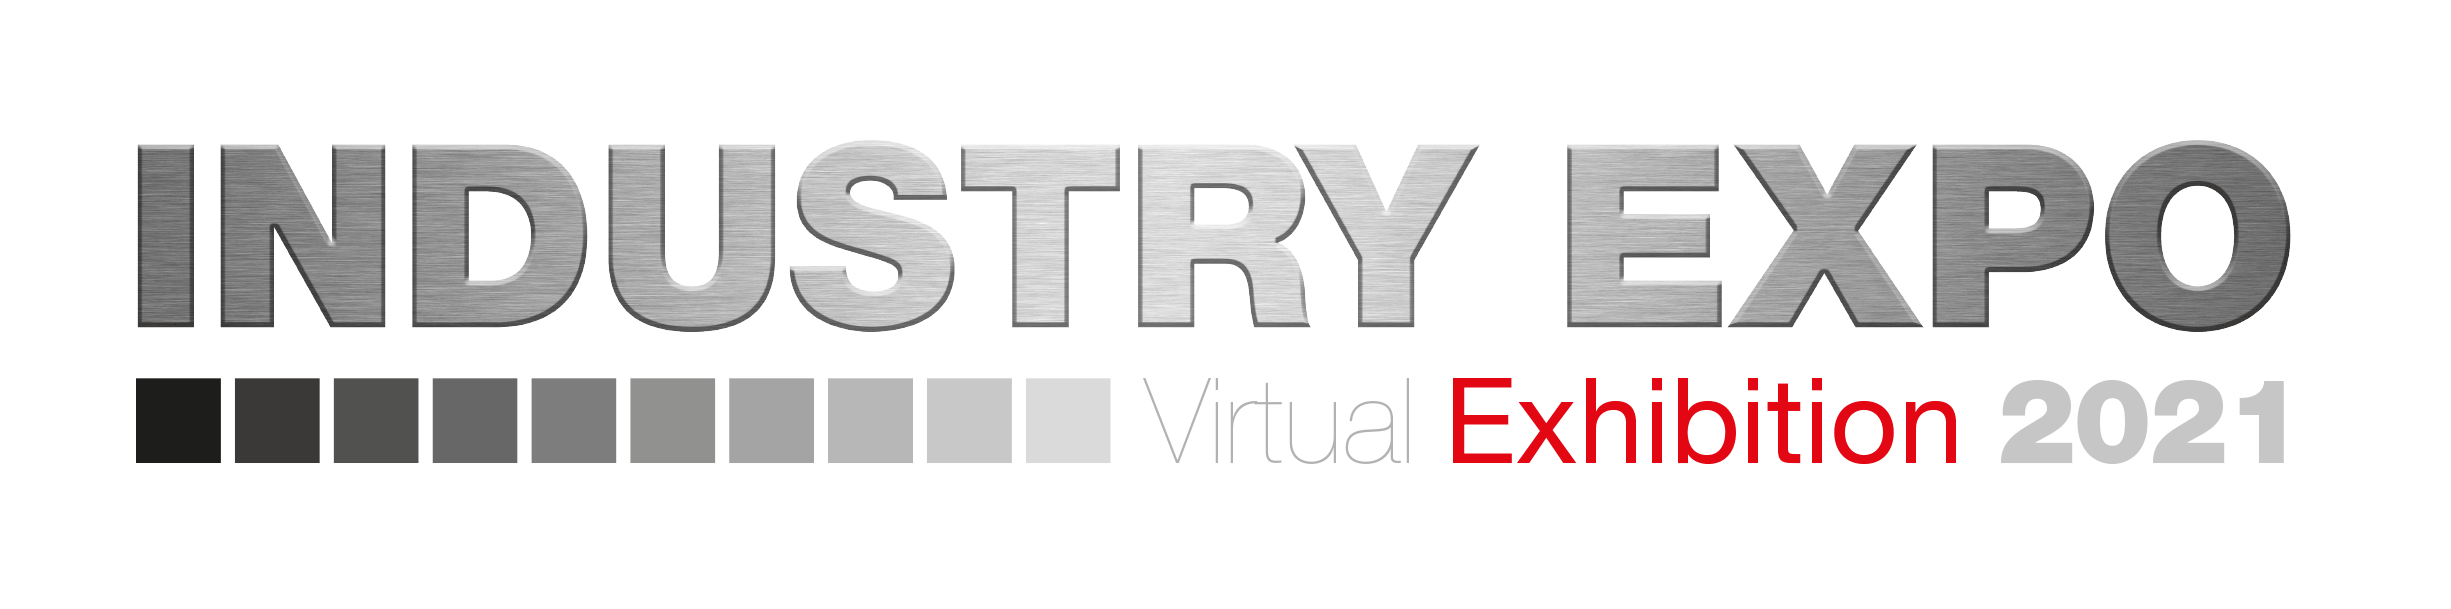 IndustryExpo Virtual Exhibition